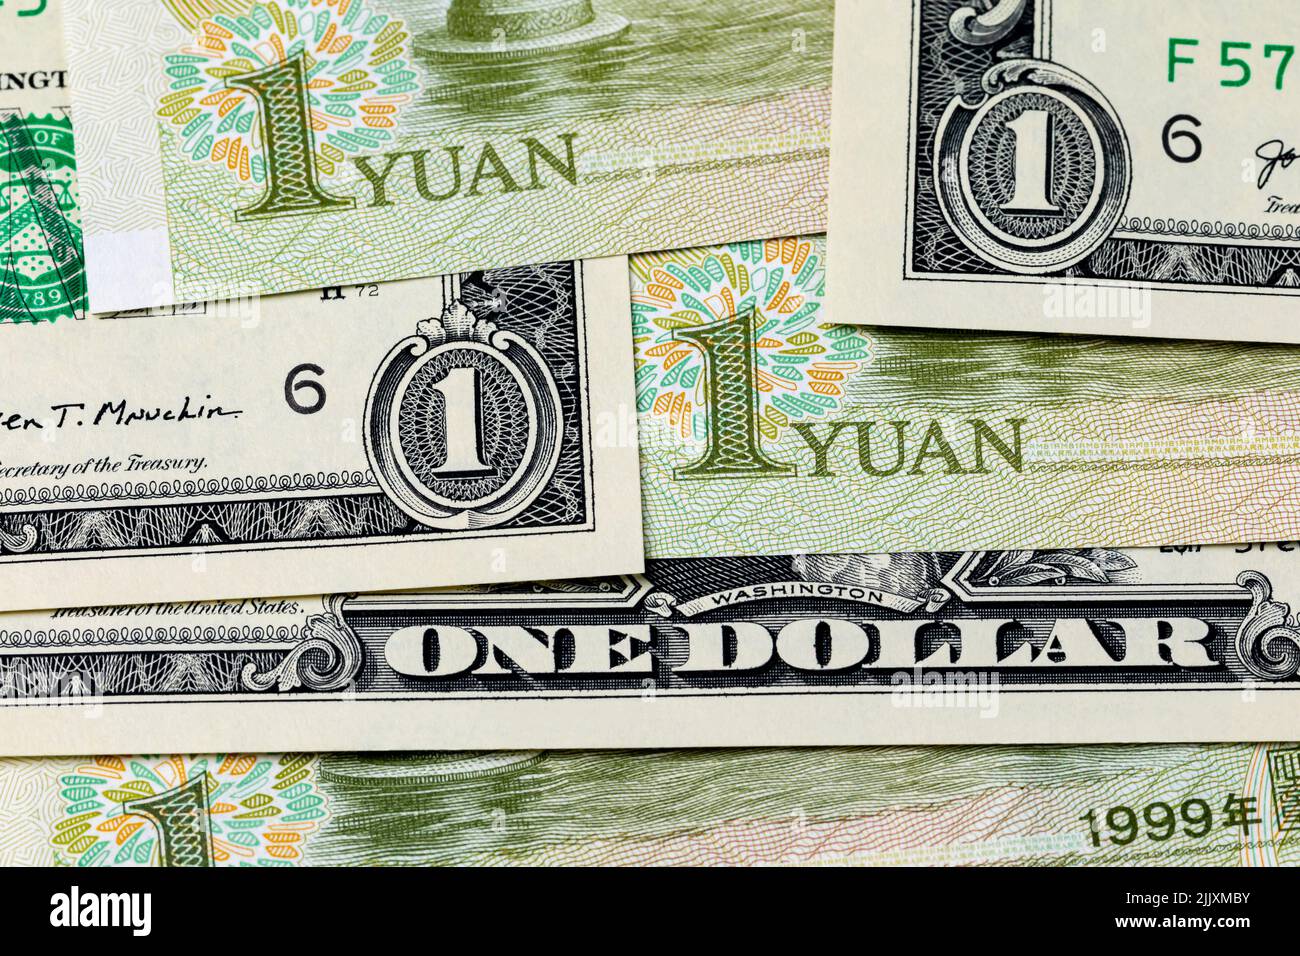 Billets en dollars américains et billet de banque Yuan de Chine. Concept de taux de change, de commerce et d'économie. Banque D'Images